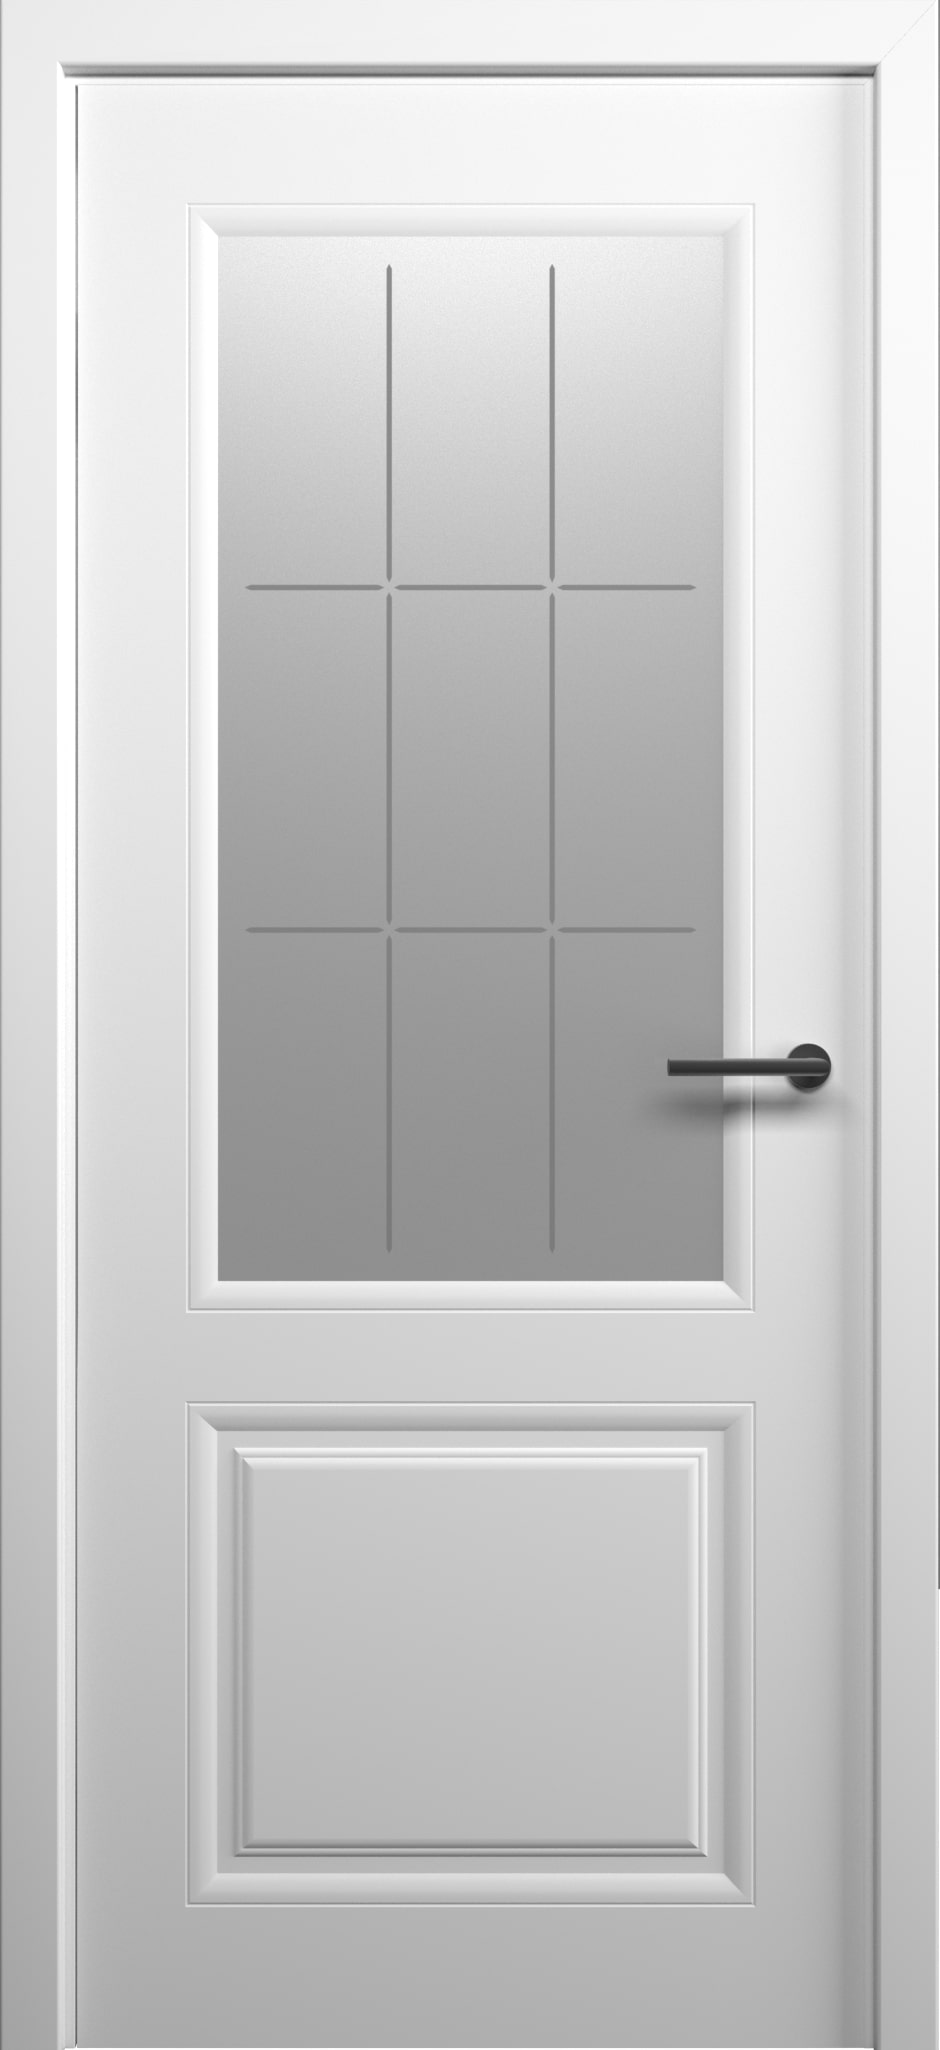 Полотно дверное остекленное СХЕМА Эмаль-2, Стиль-1 ЛЕВОЕ 800 белый ст."Топаз" (без замка)